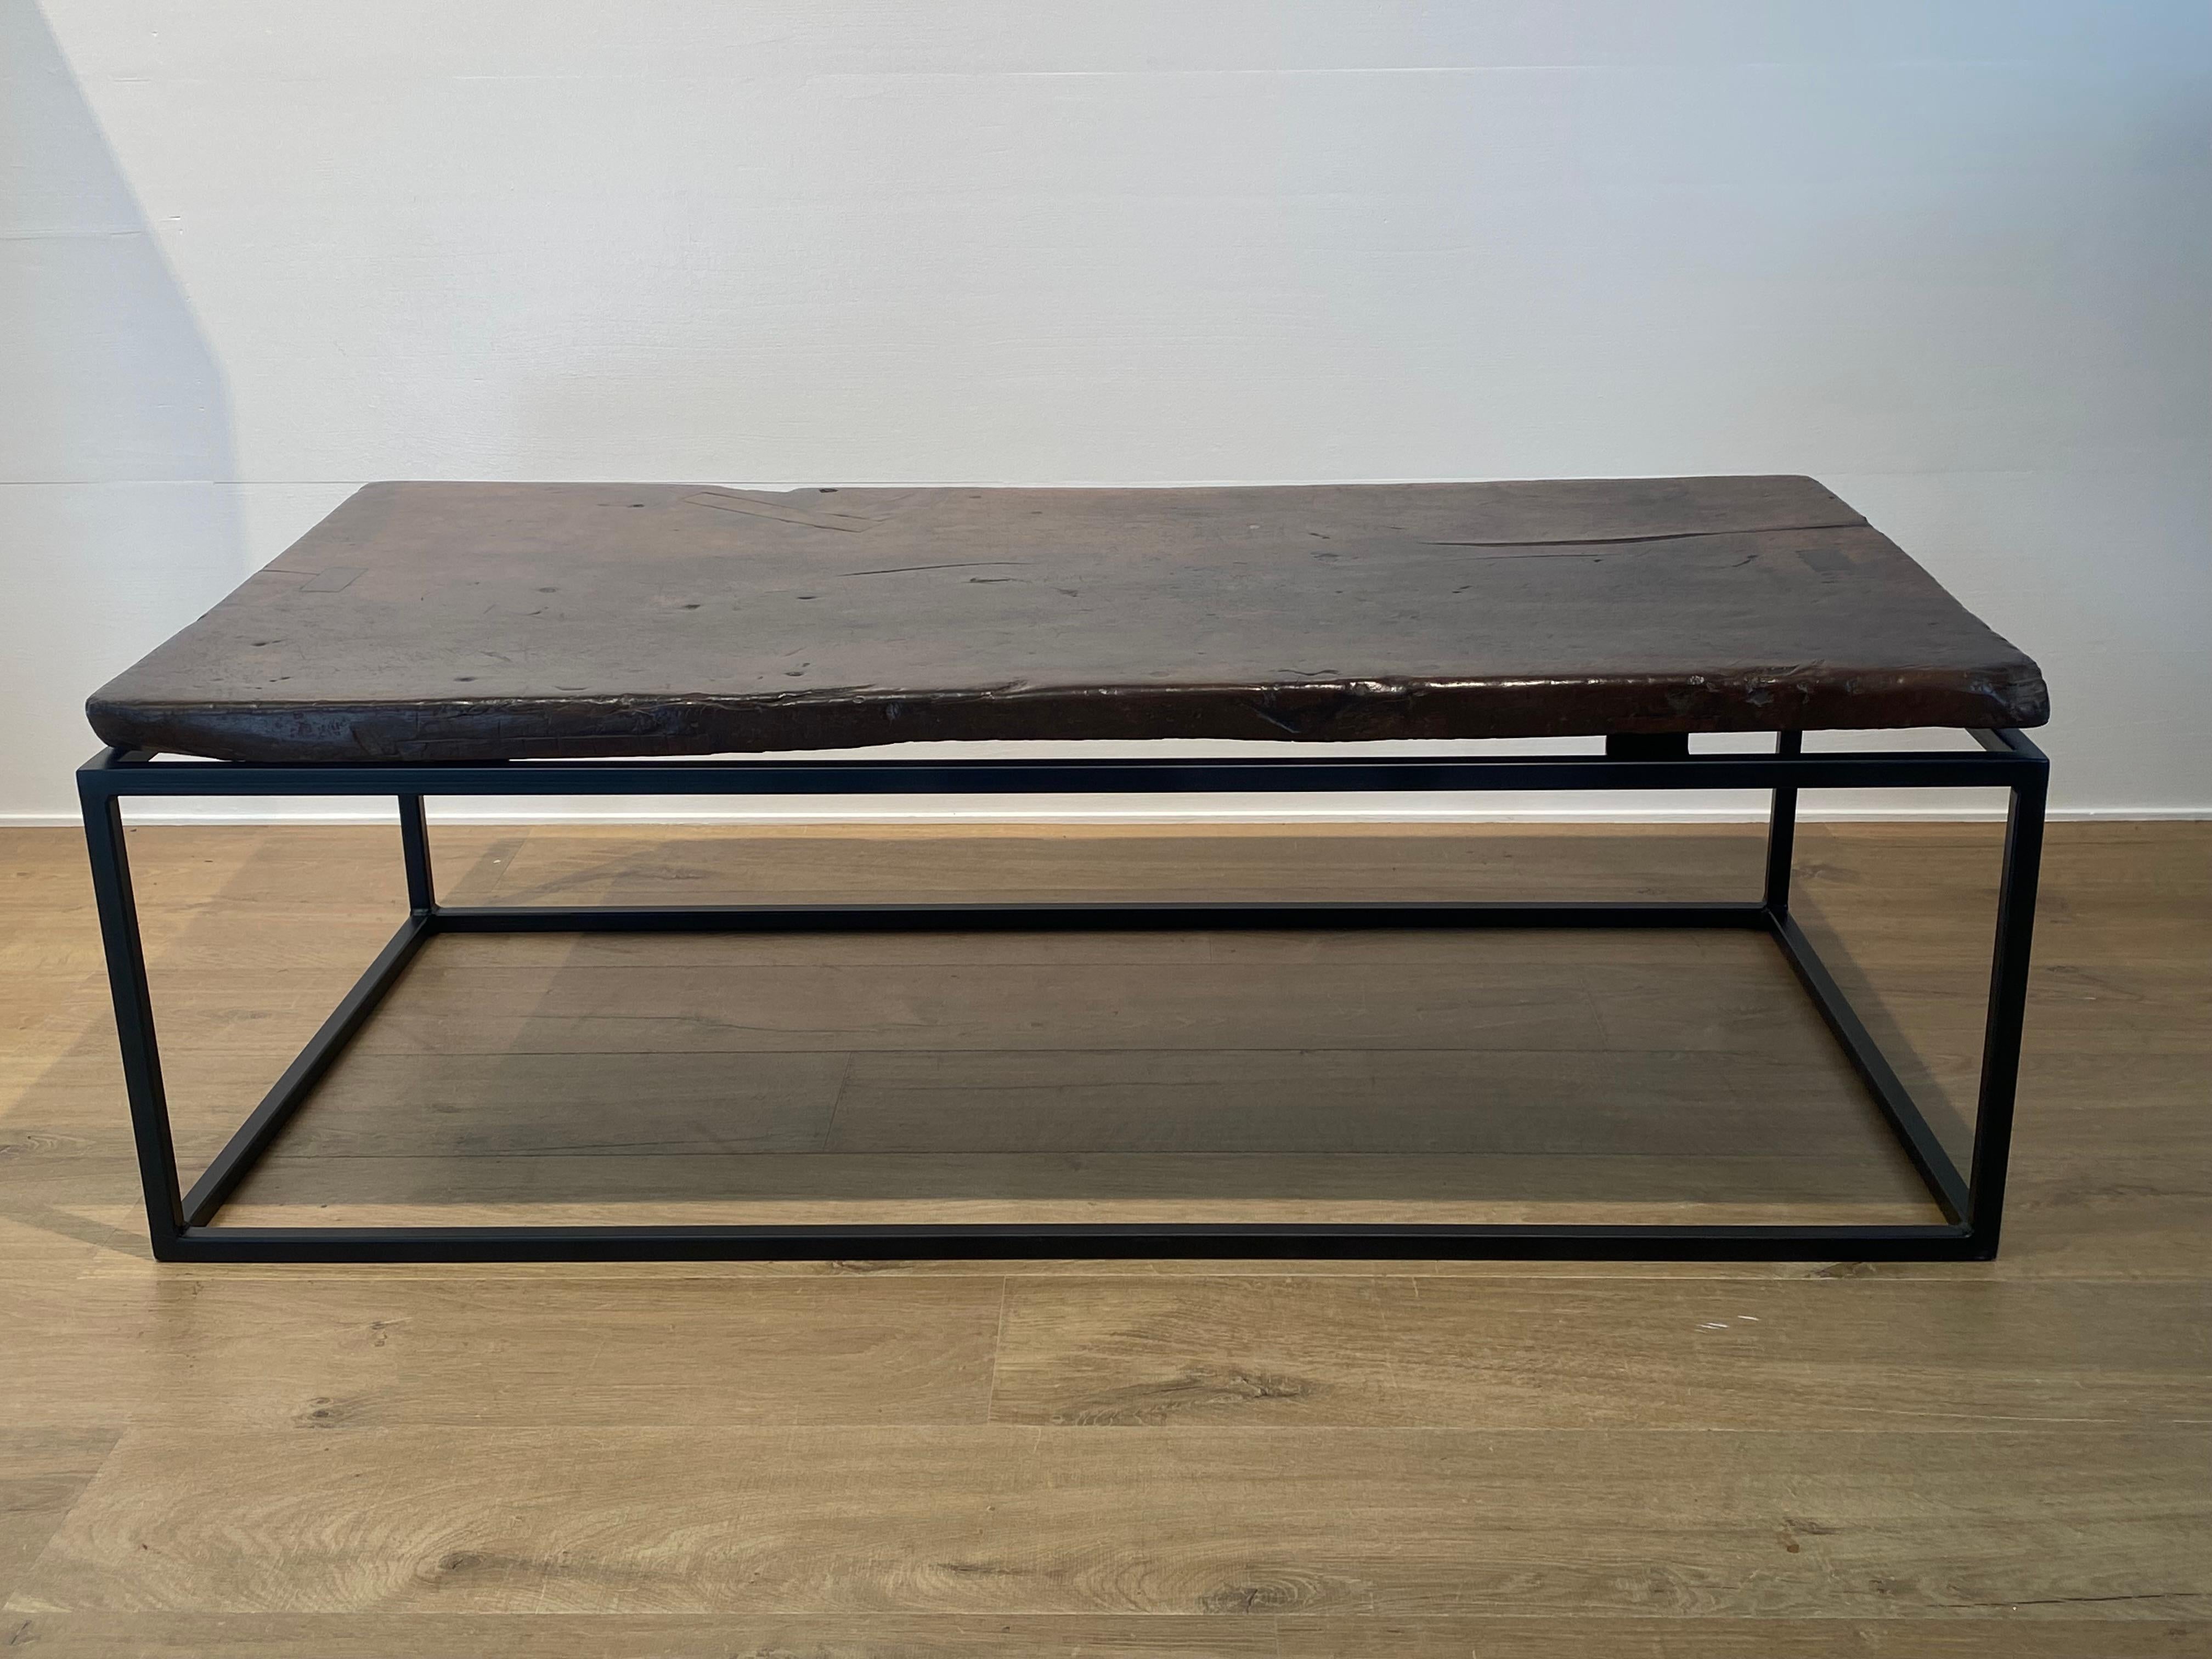 Magnifique table basse fabriquée à partir d'un ancien plateau de table en noyer espagnol.
du 18ème siècle, 
Le plateau de la table a une patine exquise et des couleurs chaudes et brillantes,
table très puissante sur une base contemporaine en